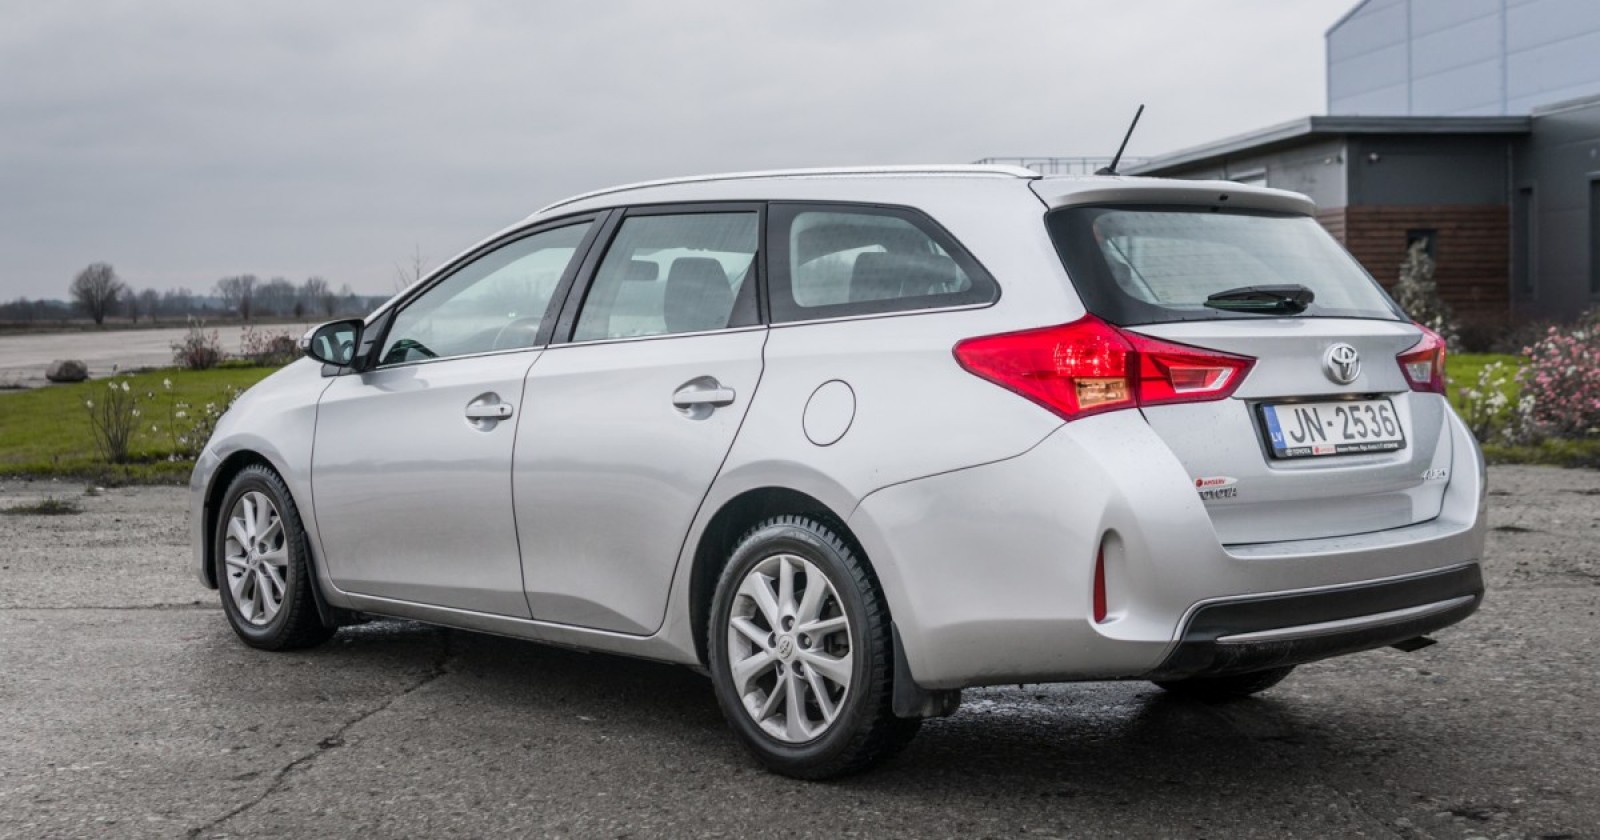 Pārdod Toyota Auris 2014 gada, Dzinējs 1.4l Dīzelis